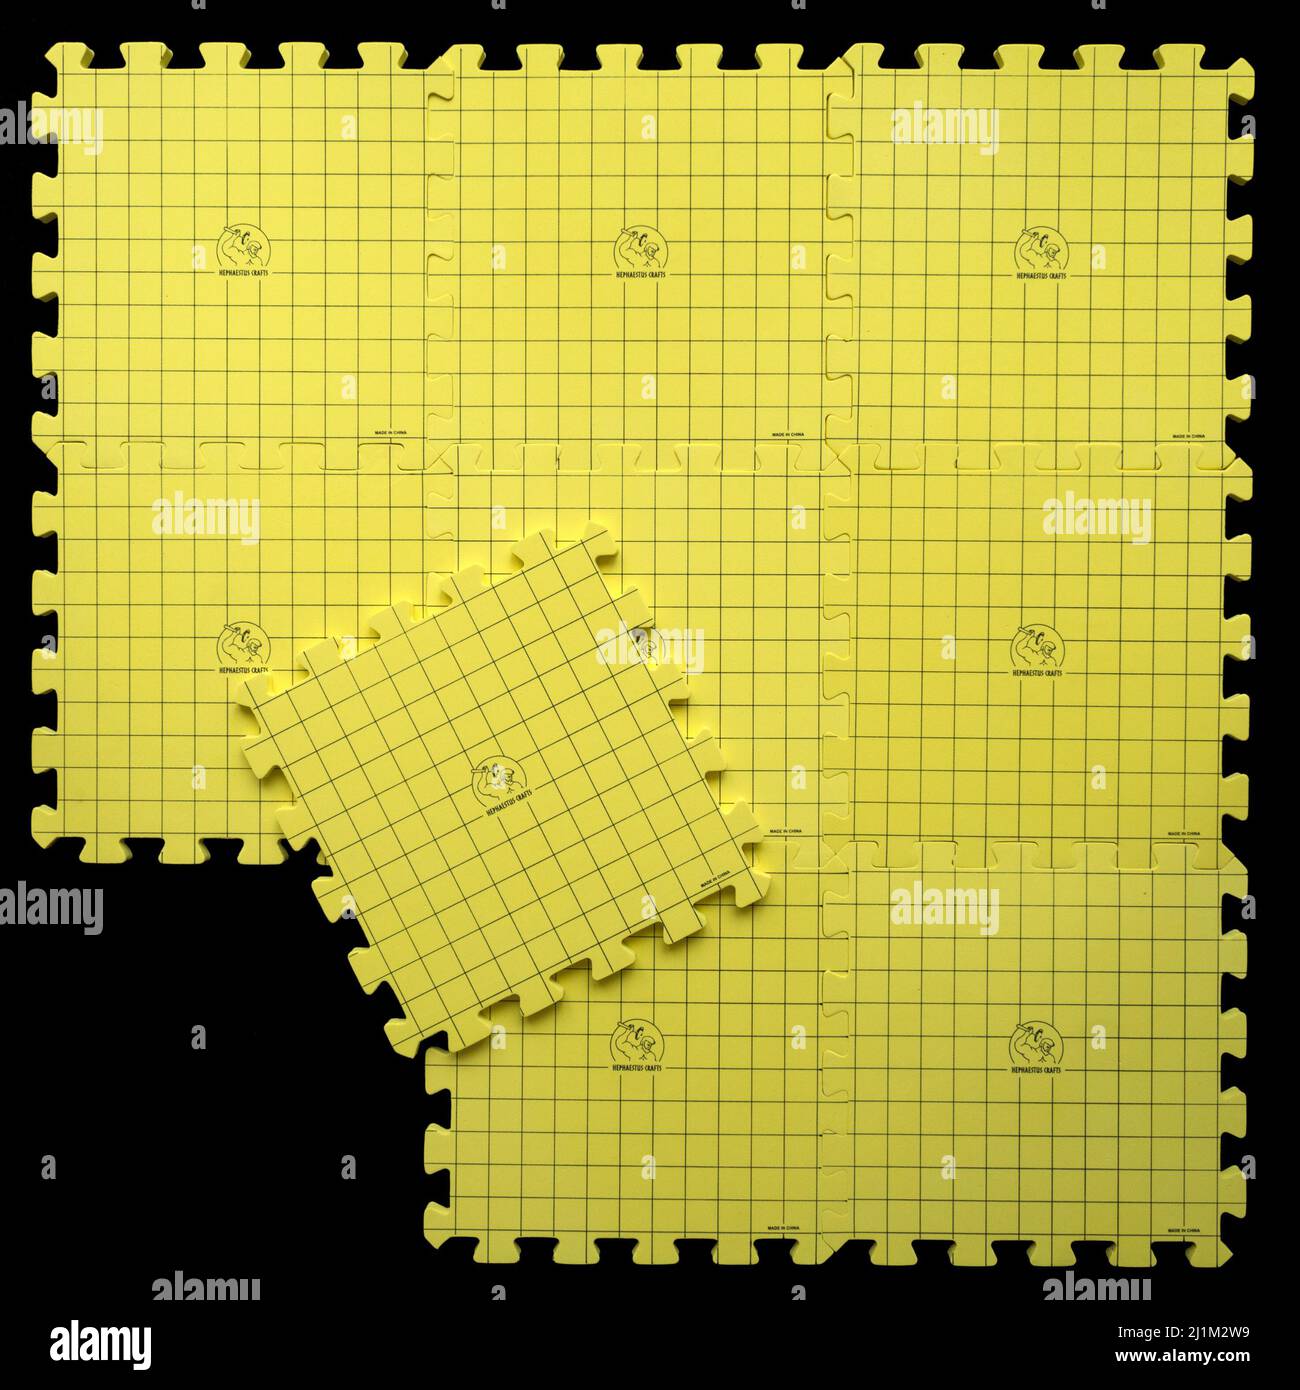 FOTOGRAFÍA DE STOCK: Un juego de nueve alfombrillas de bloqueo Hephaestus Craft de espuma amarilla entrelazada que se utilizan para la colocación de tejidos. Foto de stock